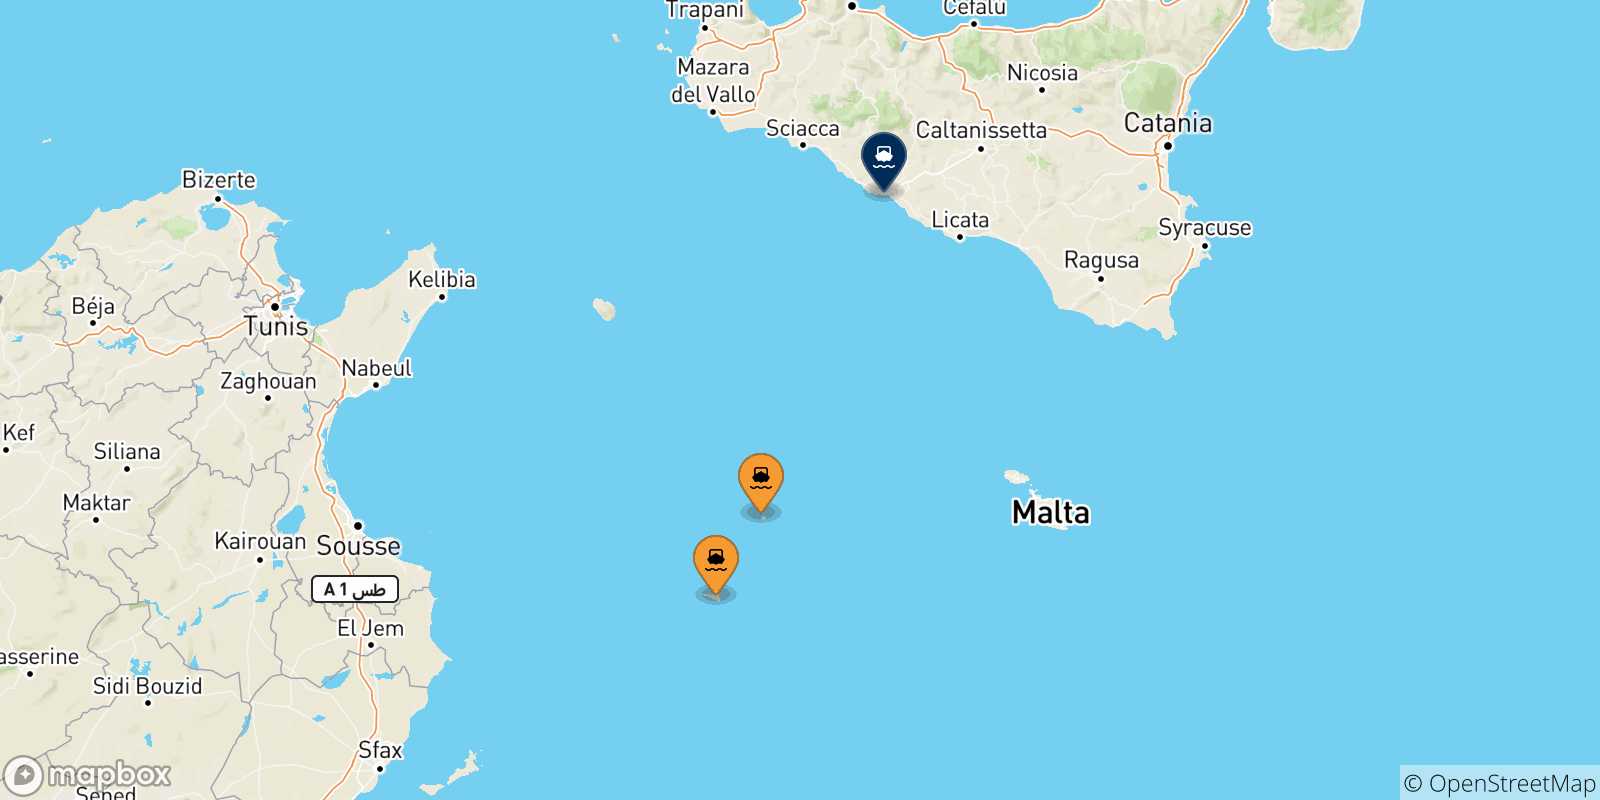 Mappa delle possibili rotte tra le Isole Pelagie e l'Italia